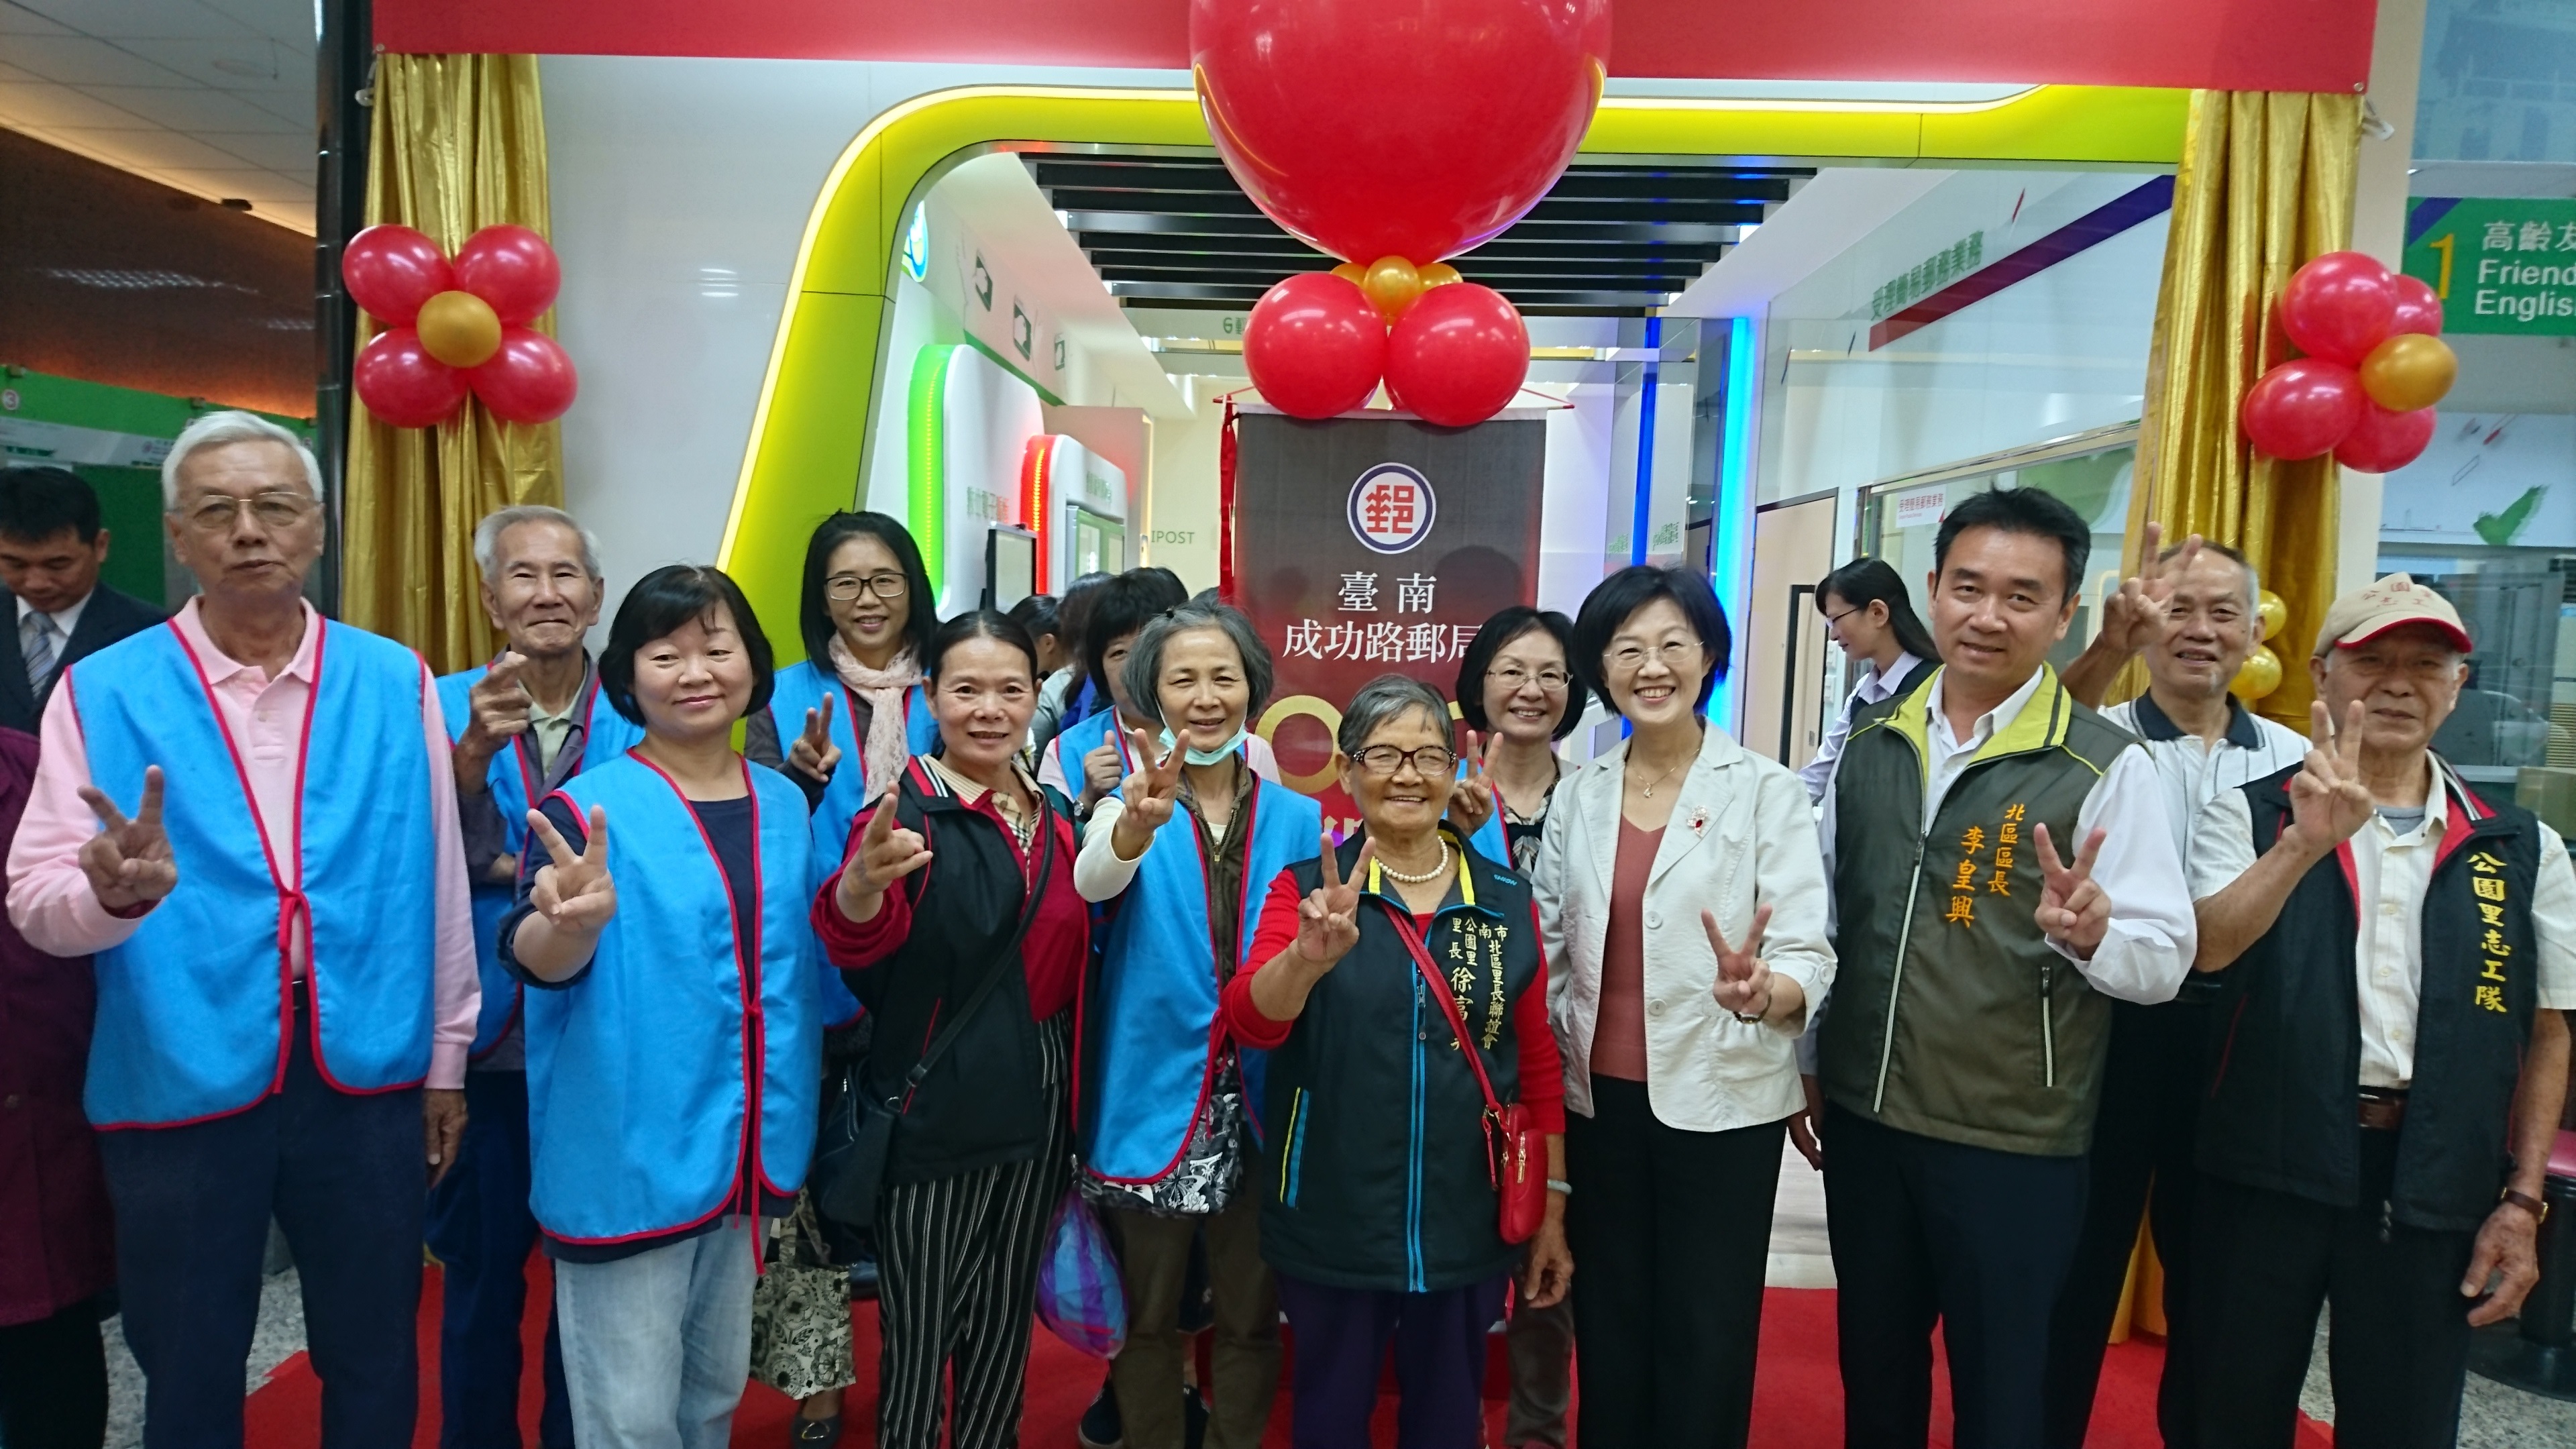 臺南郵局舉辦「o2o郵購站」啟用儀式